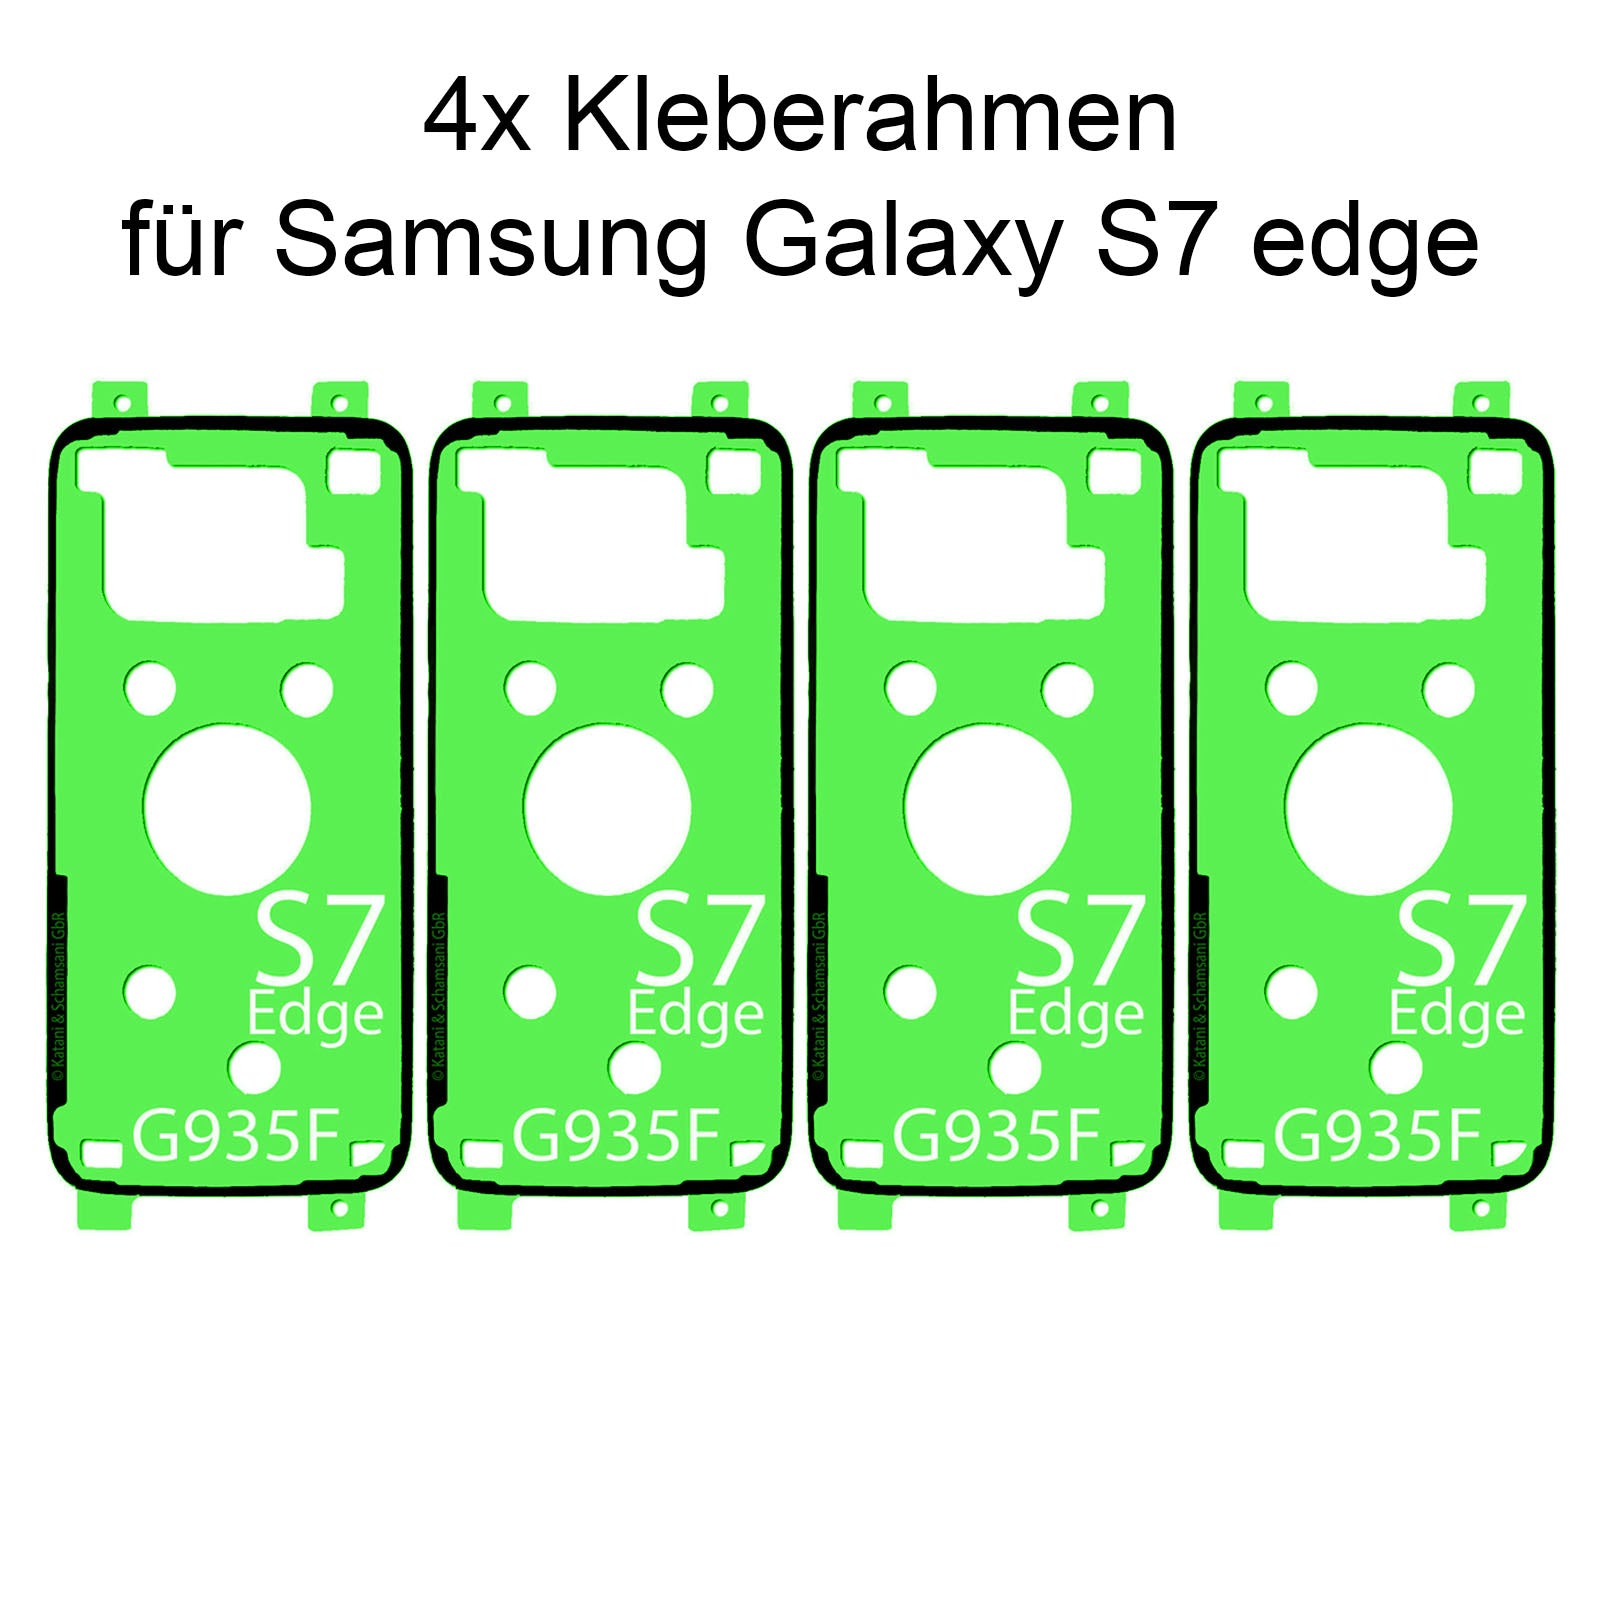 Reparieren Sie Ihr Samsung Galaxy A5 2017 mit unserem hochwertigen Rahmenkleber und Klebepad Adhesive. Einfache Anwendung und zuverlässige Haltekraft. Jetzt bei Dinngs.de entdecken.